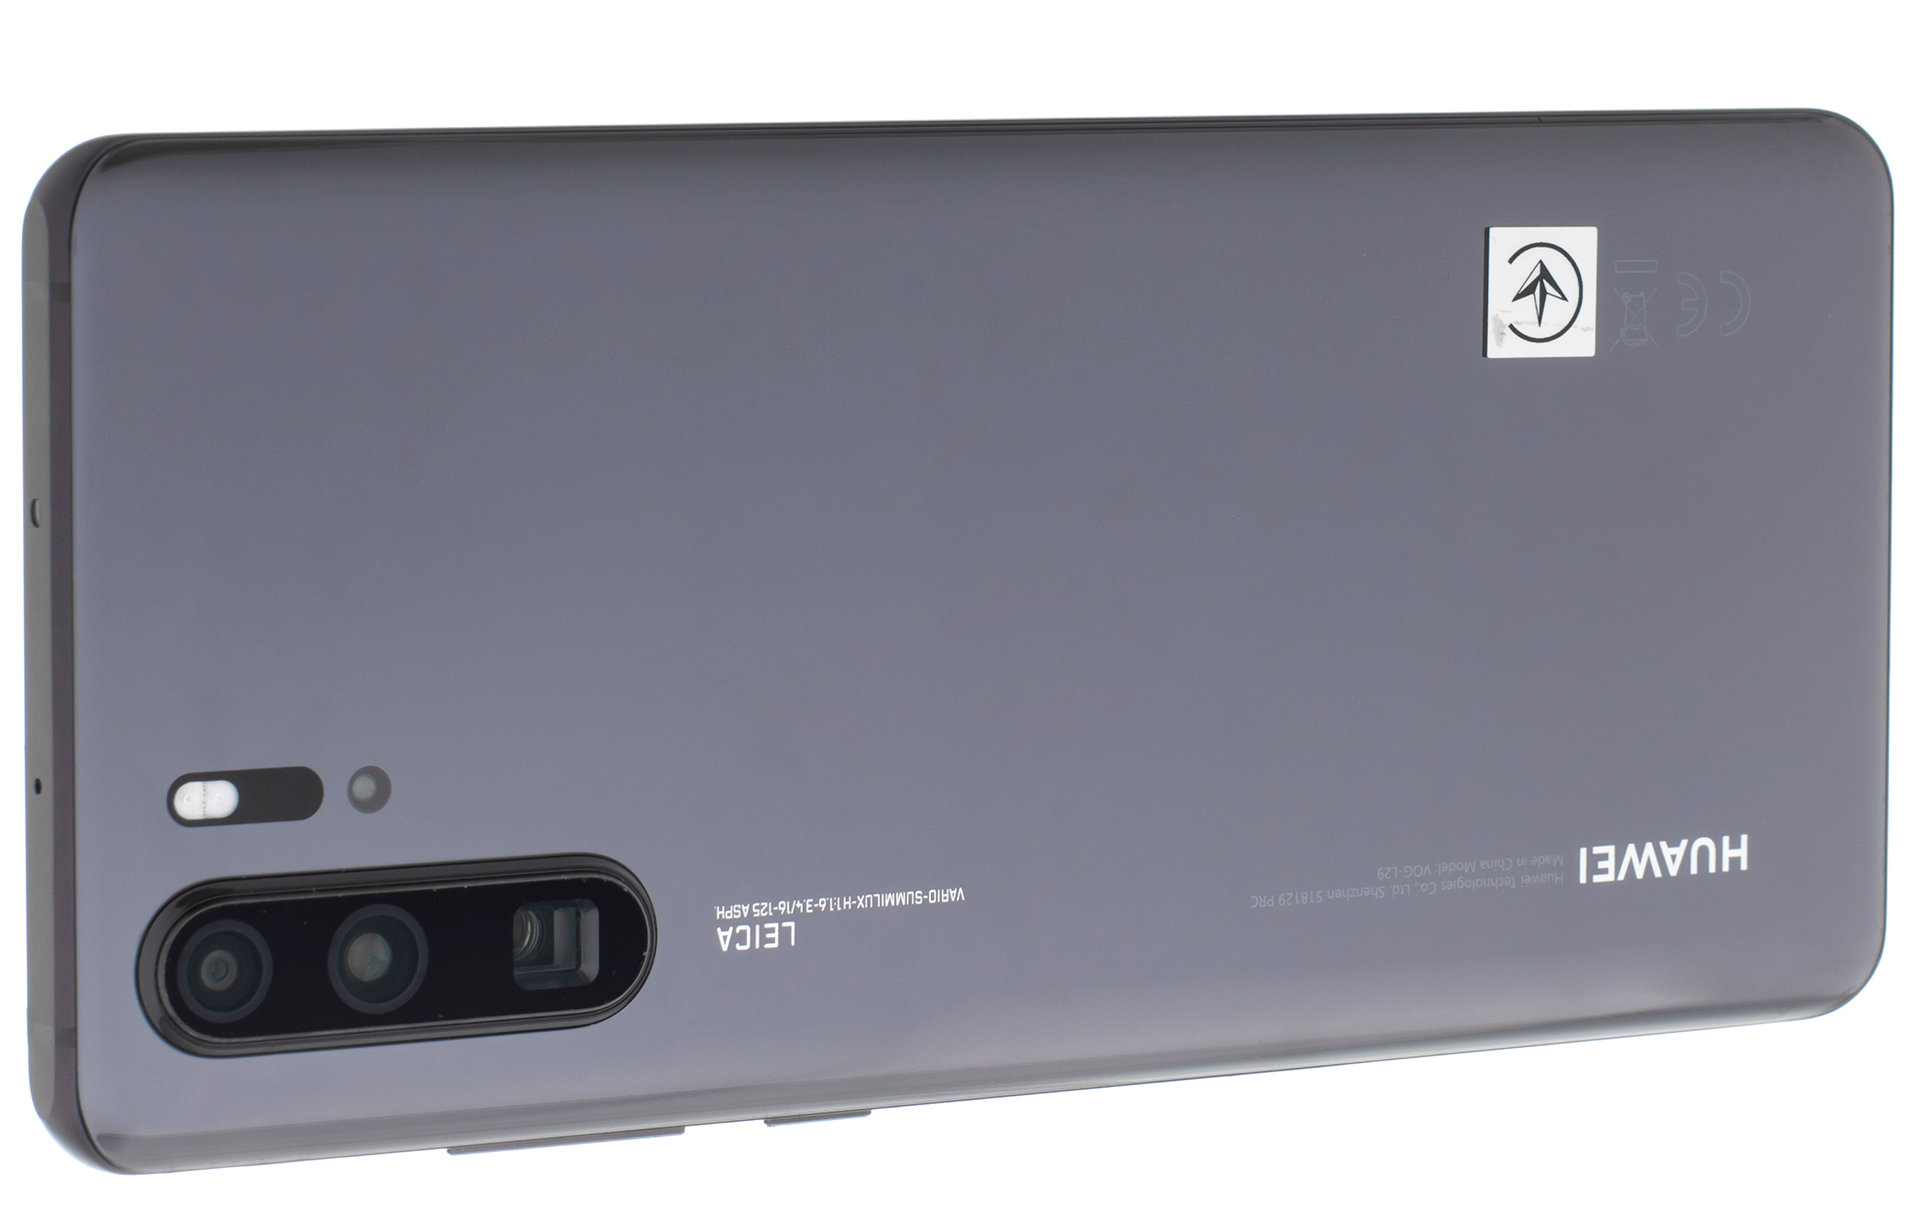 HUAWEI P30 Pro 6/128GB 6.5" Czarny 51093SNB Smartfon - niskie ceny i opinie  w Media Expert